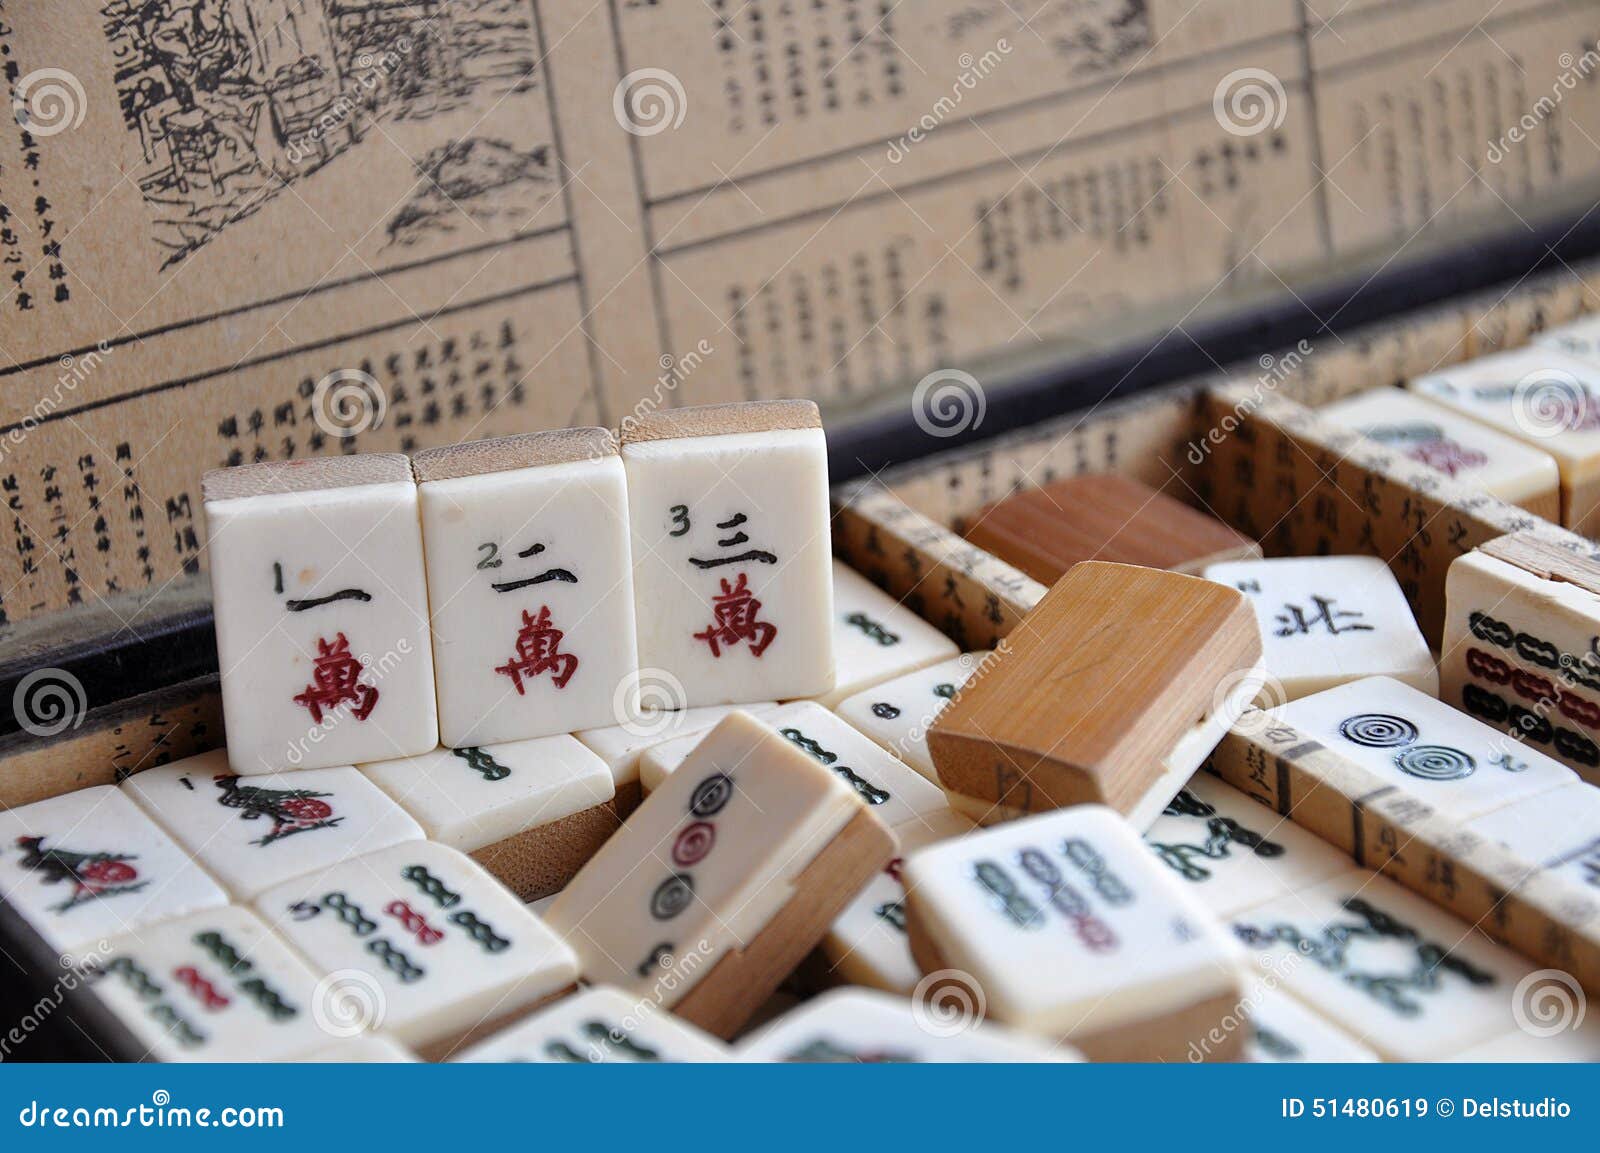 Box of Mahjong tiles stock image. Image of tiles, game - 51480619